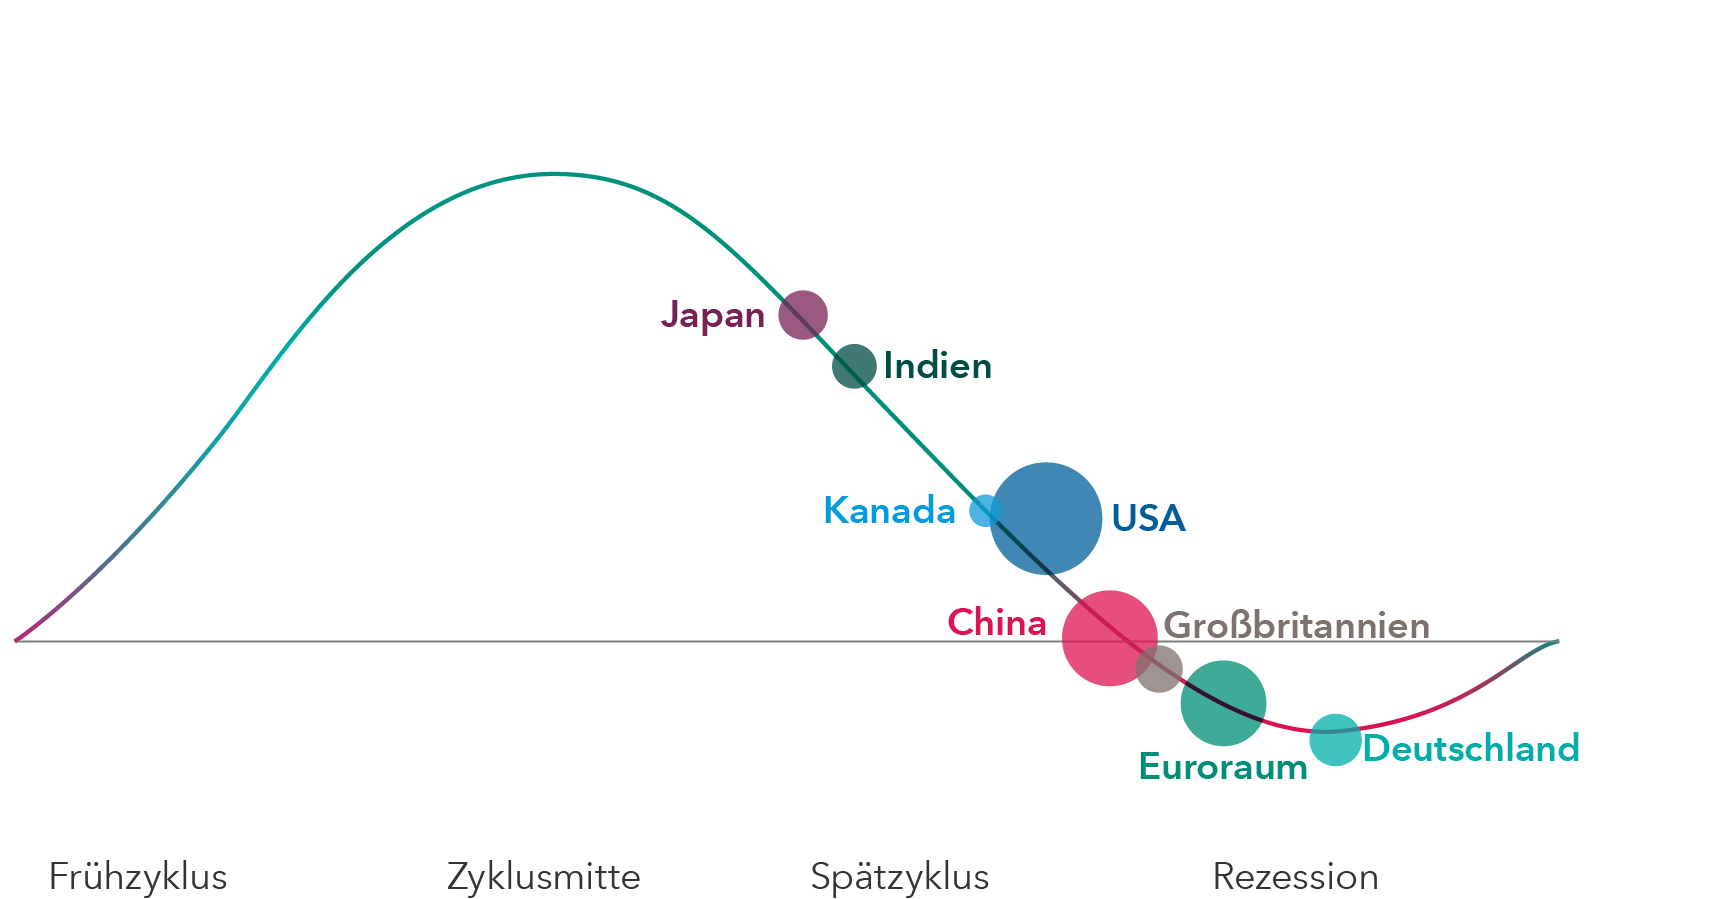 Die Abbildung zeigt ein Liniendiagramm mit den Standardkategorien des Konjunkturzyklus – Frühphase, mittlere Phase, Spätphase und Rezession – für acht große Länder oder Regionen. Demnach befinden sich Japan, Indien, Kanada und die USA in der mittleren bis Spätphase, China an der Grenze zwischen Spätphase und Rezession und das Vereinigte Königreich, die Eurozone und Deutschland in der Rezession.